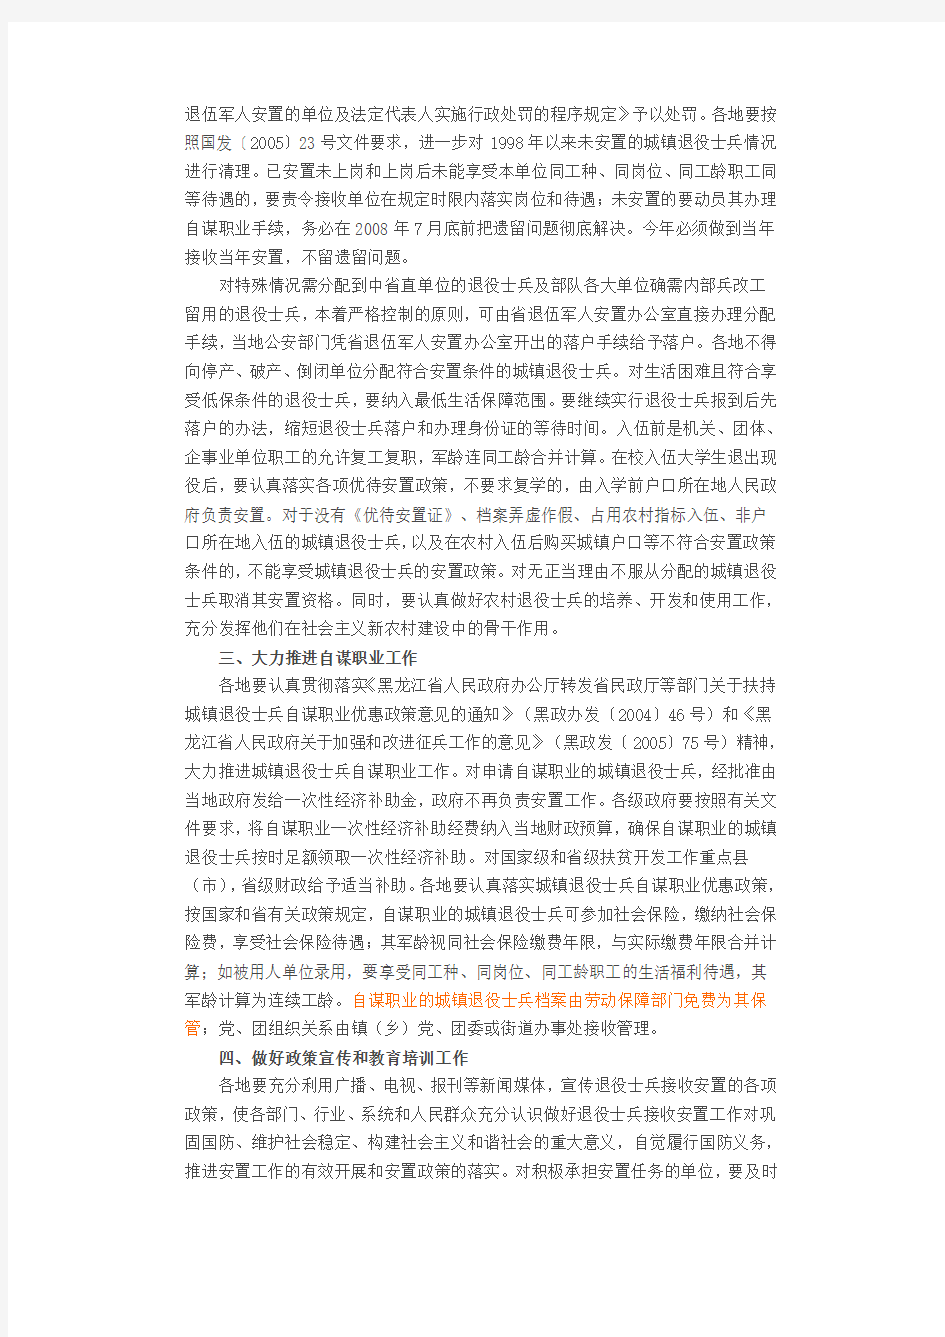 黑龙江省人民政府关于做好2007年冬季退役士兵接收安置工作的通知